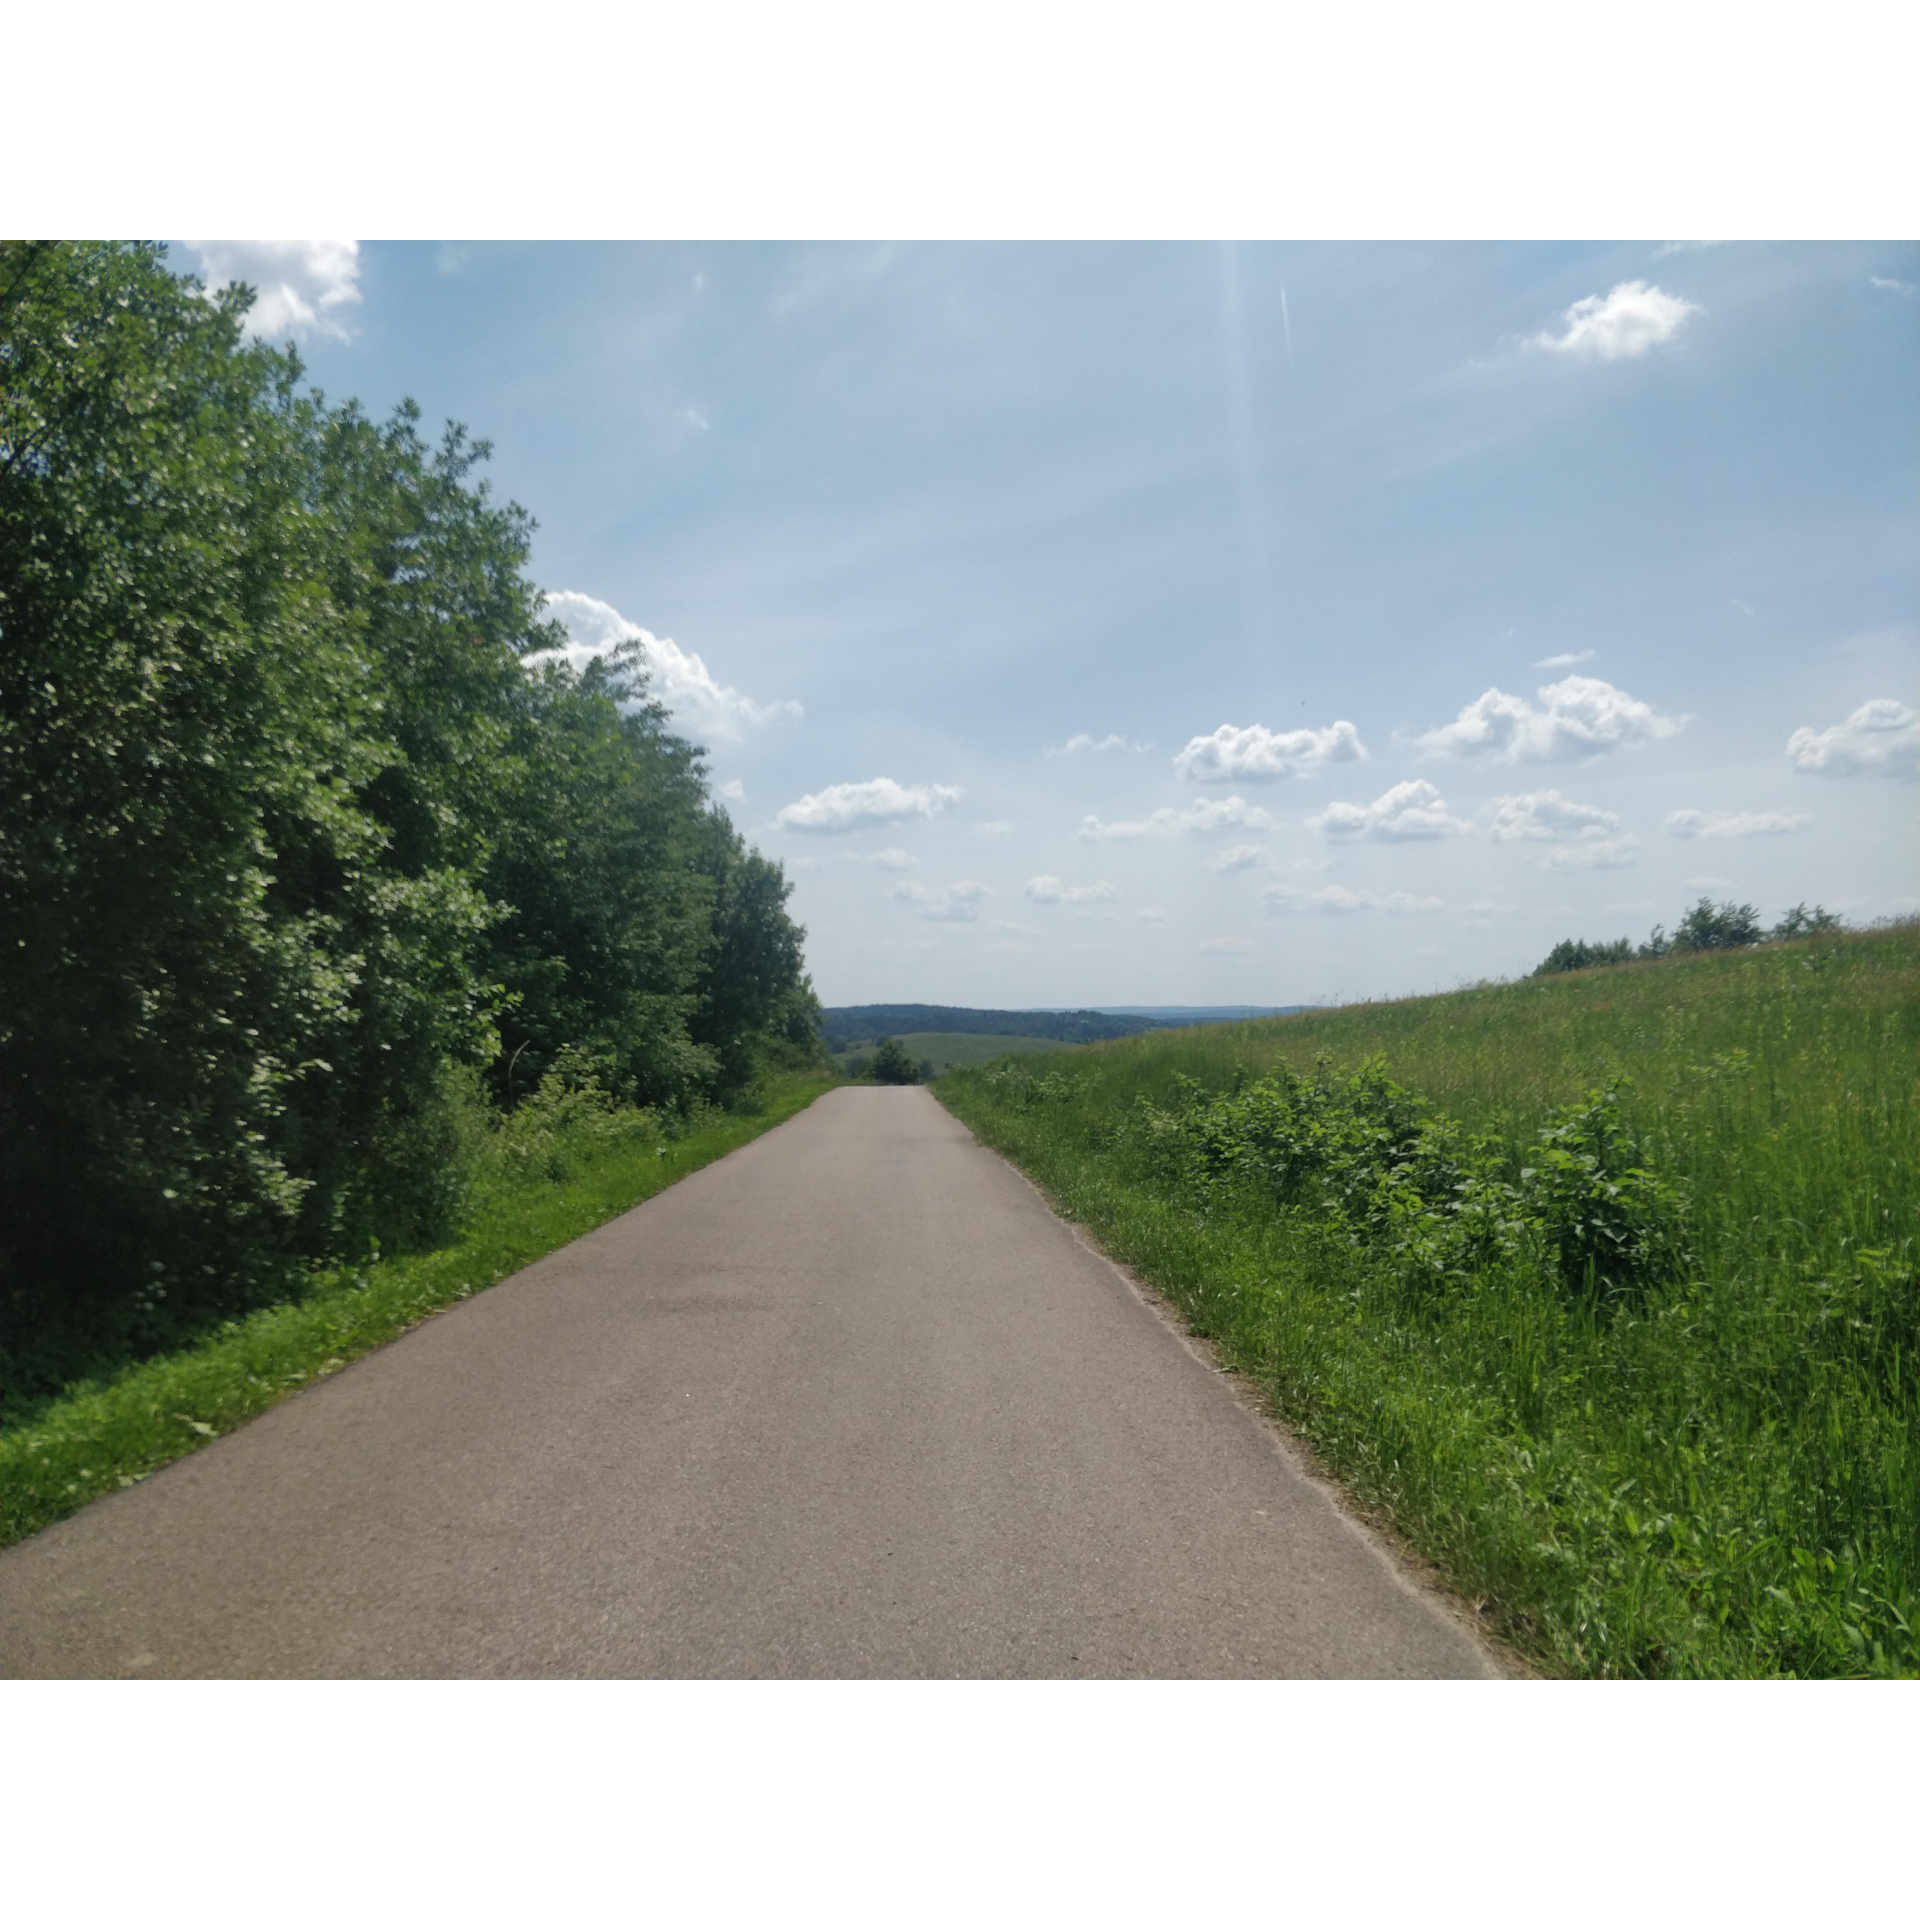 Droga asfaltowa z zielonymi drzewami na lewym poboczu i łąką na prawym poboczu